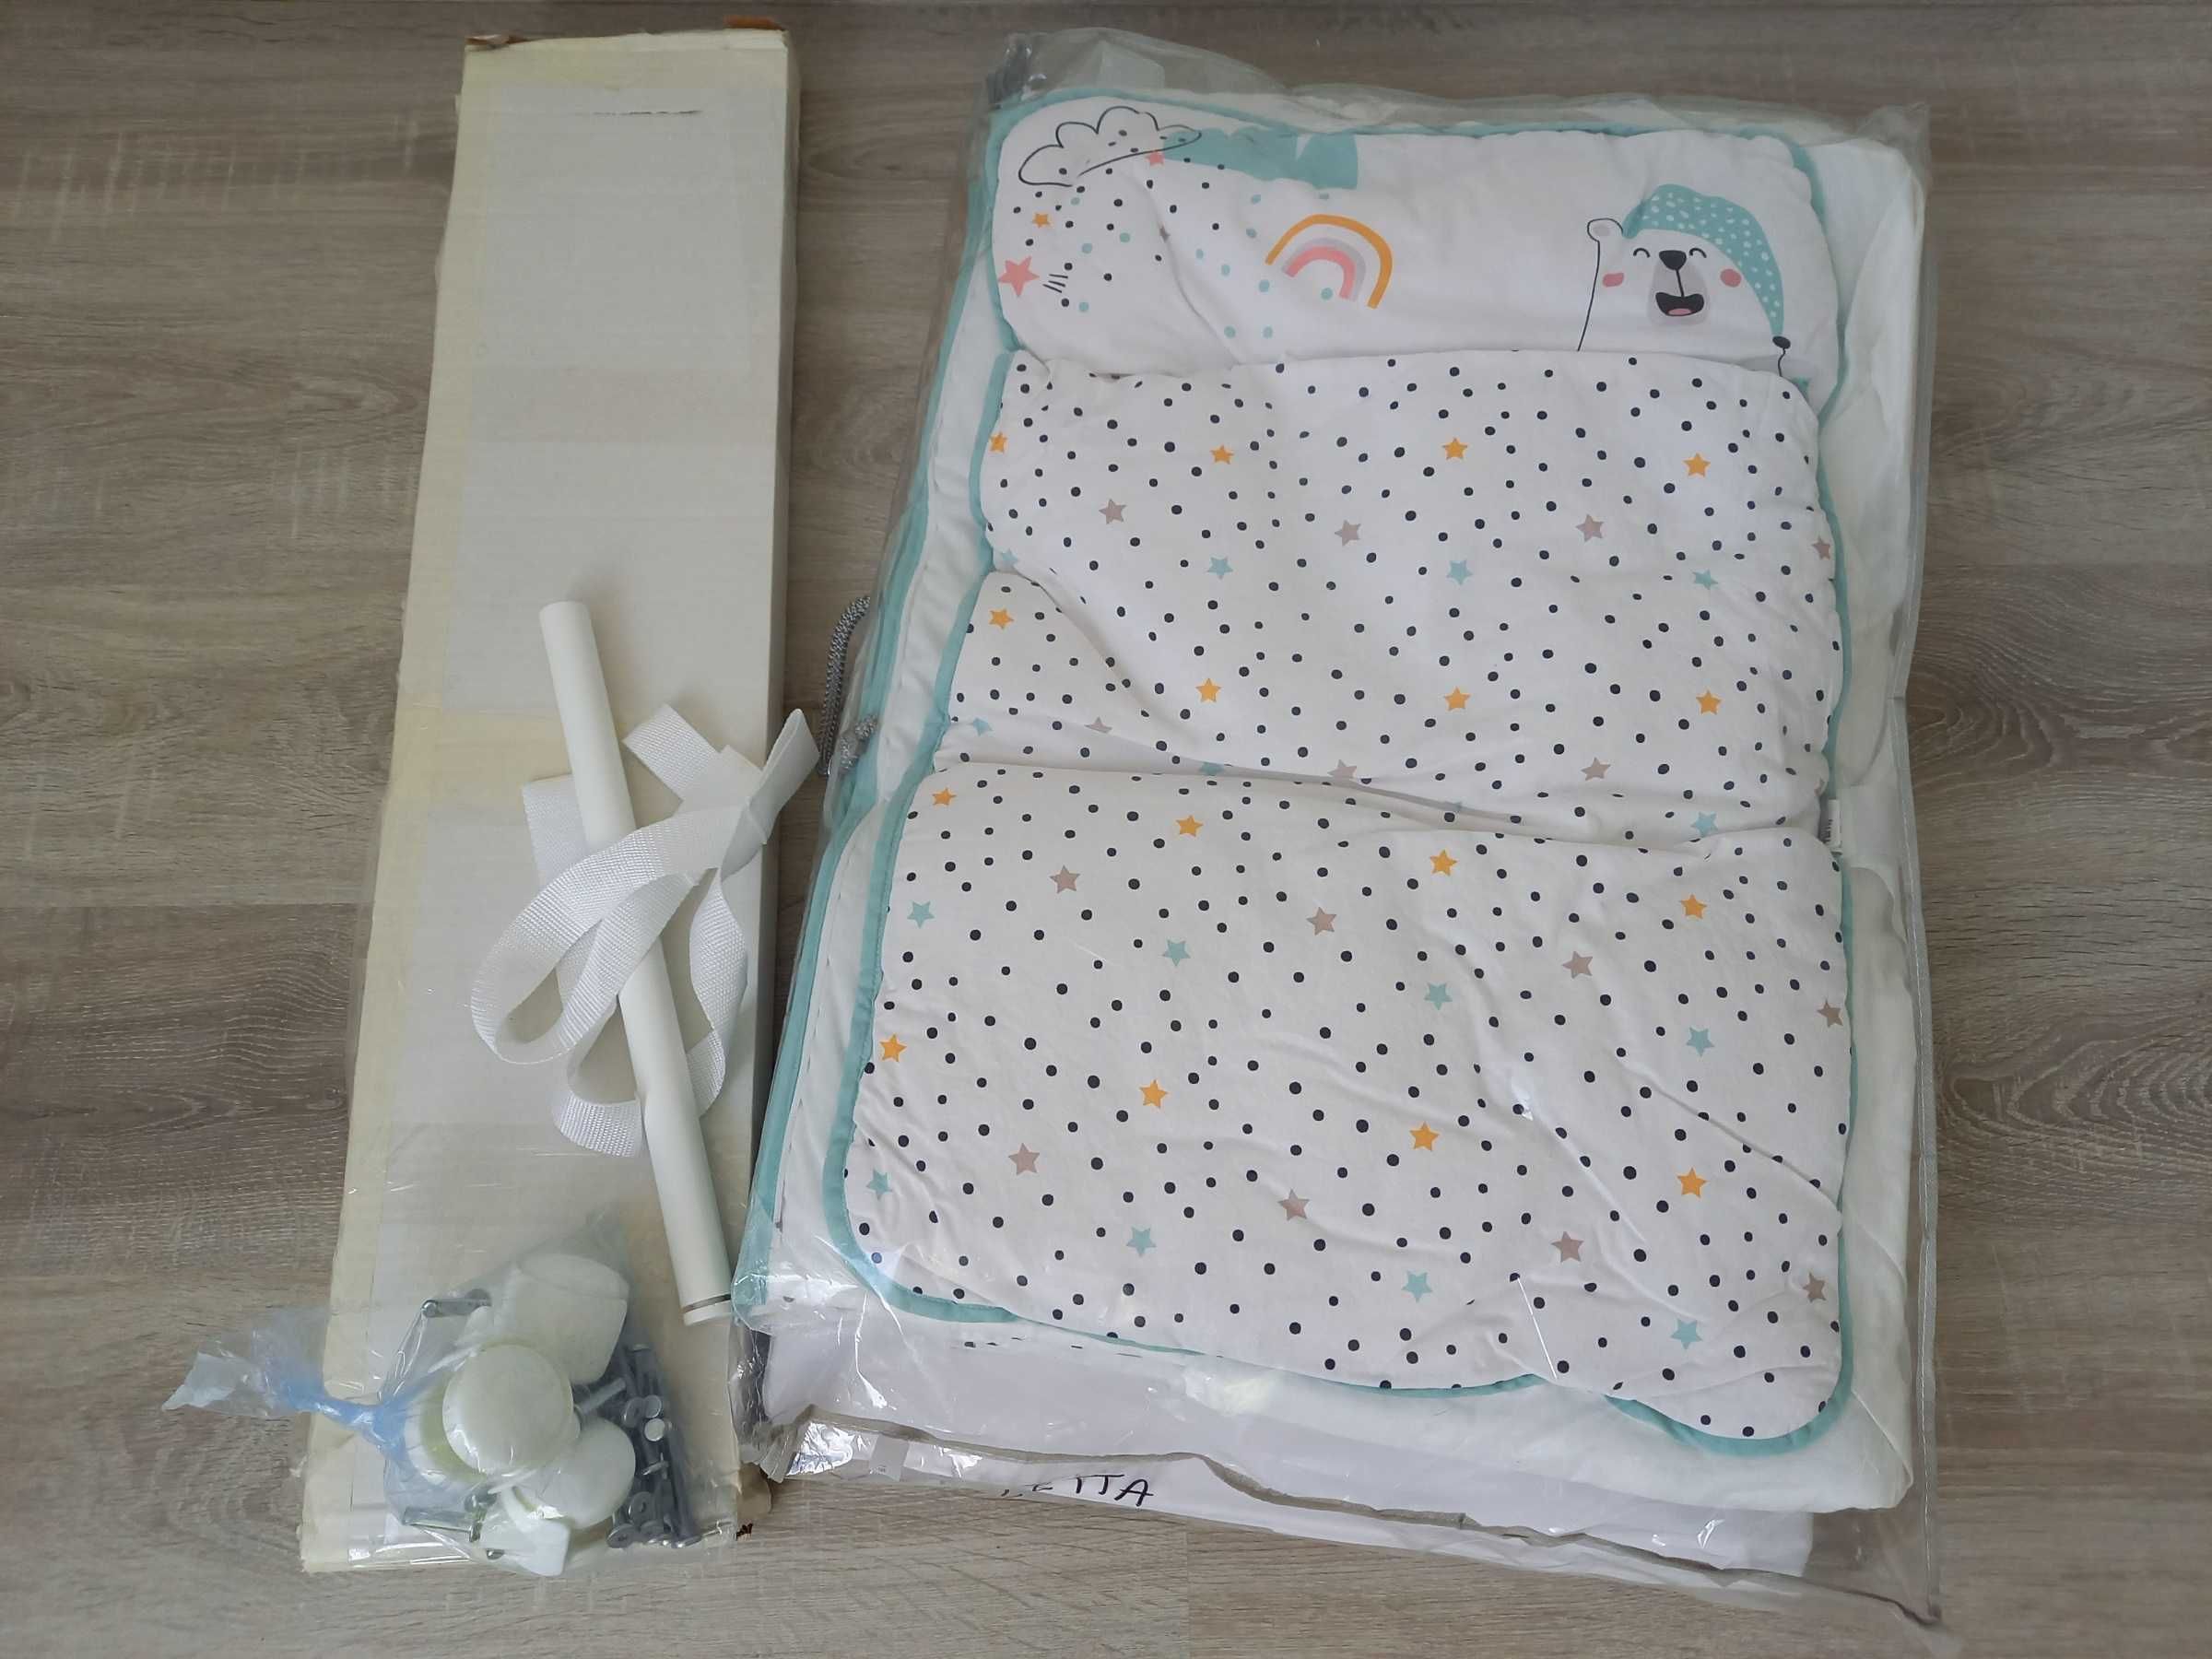 NOWE składane łóżeczko niemowlęce Naf Naf + KOMPLET POŚCIELI